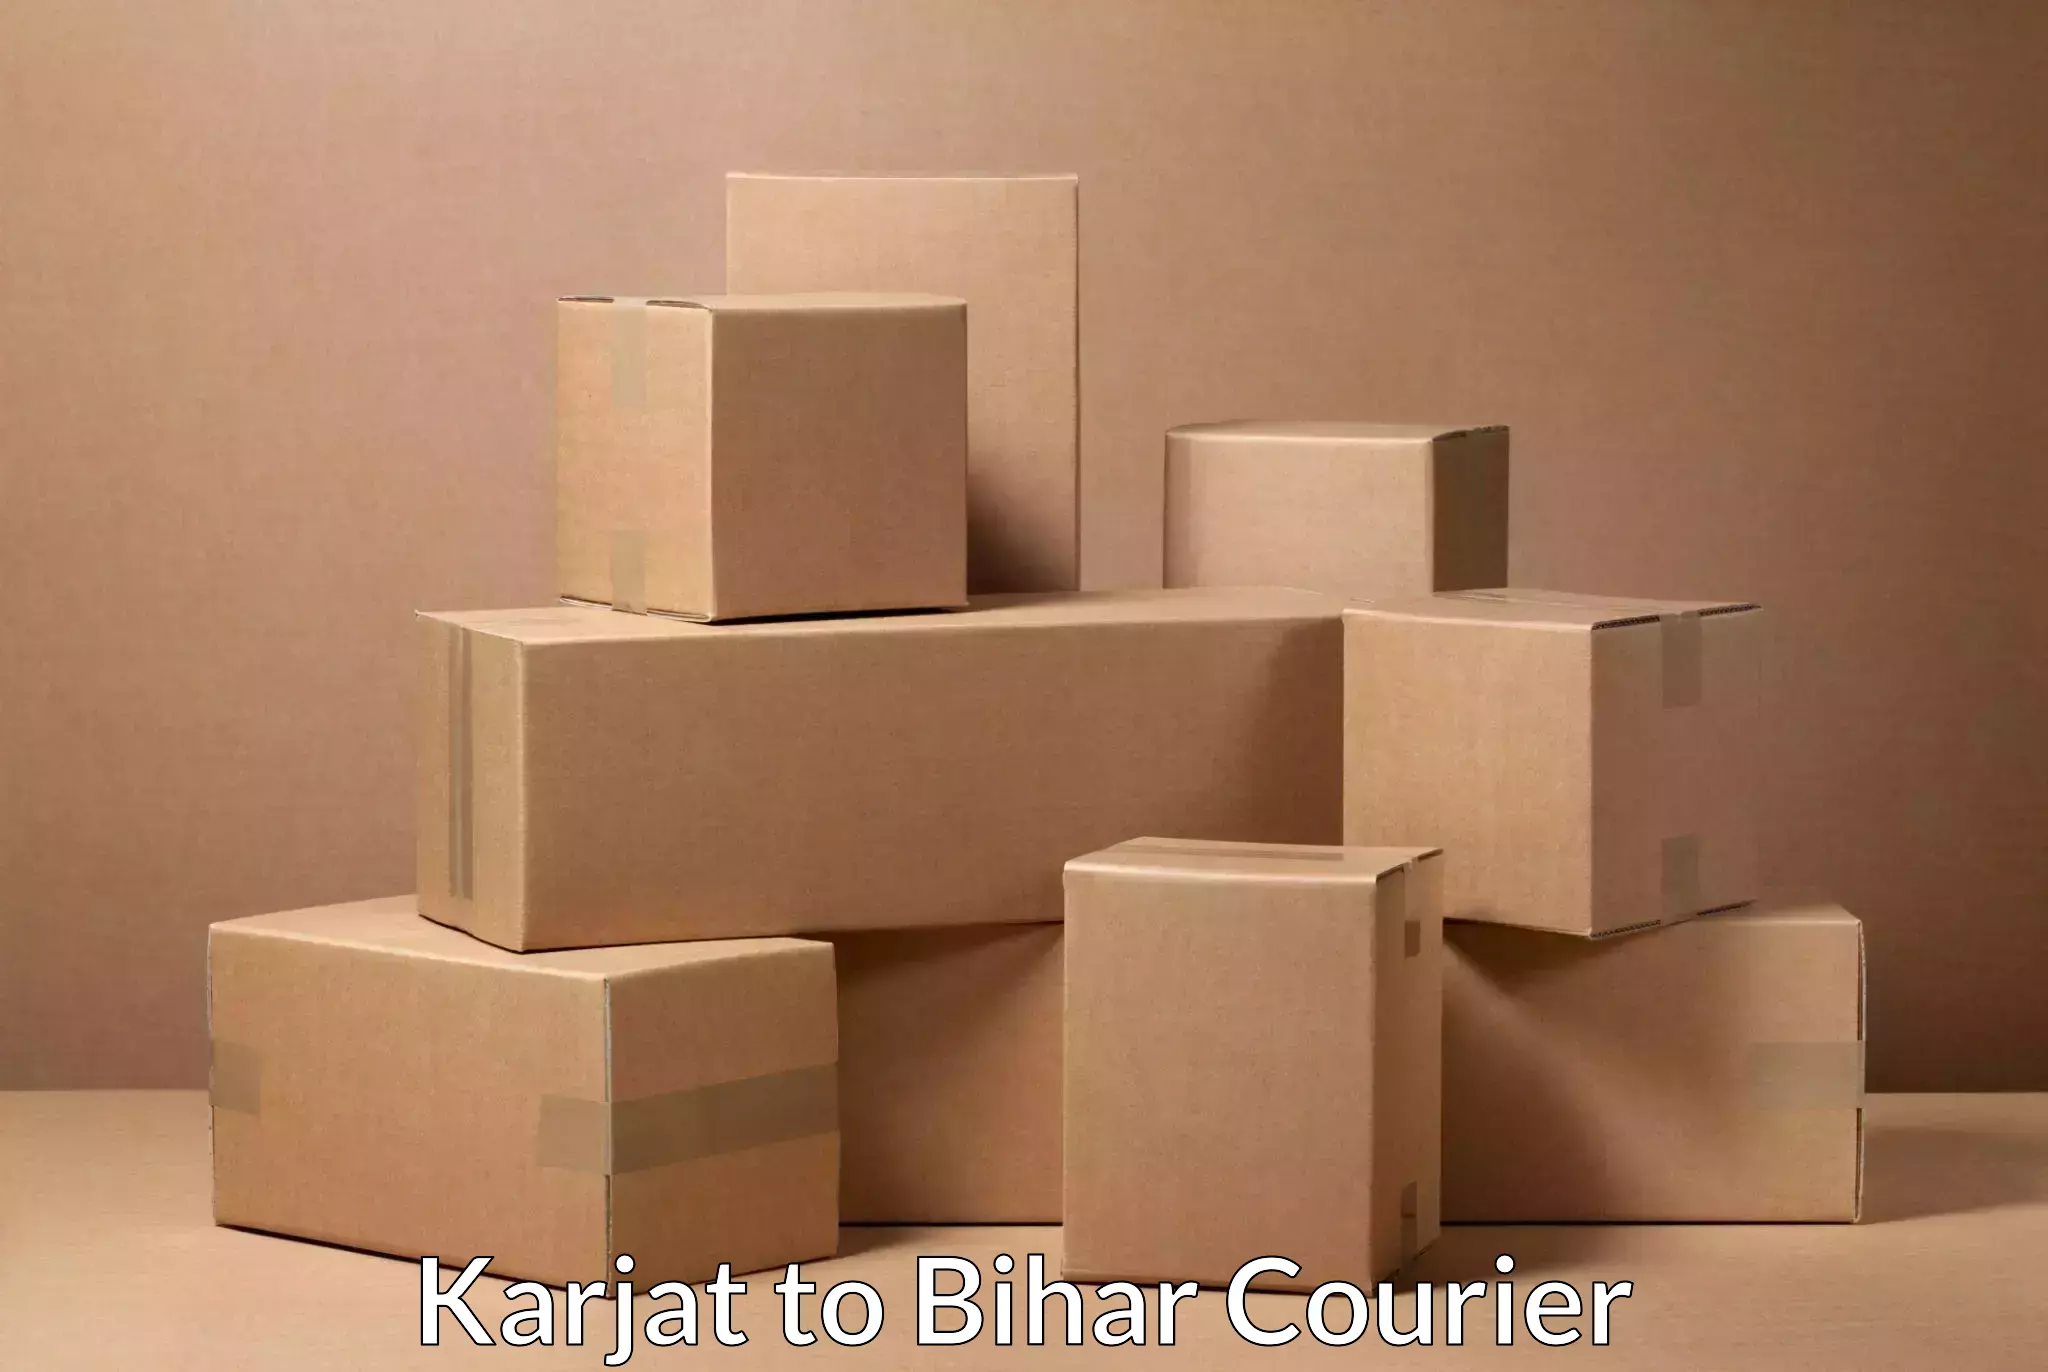 Bulk courier orders Karjat to Bihar